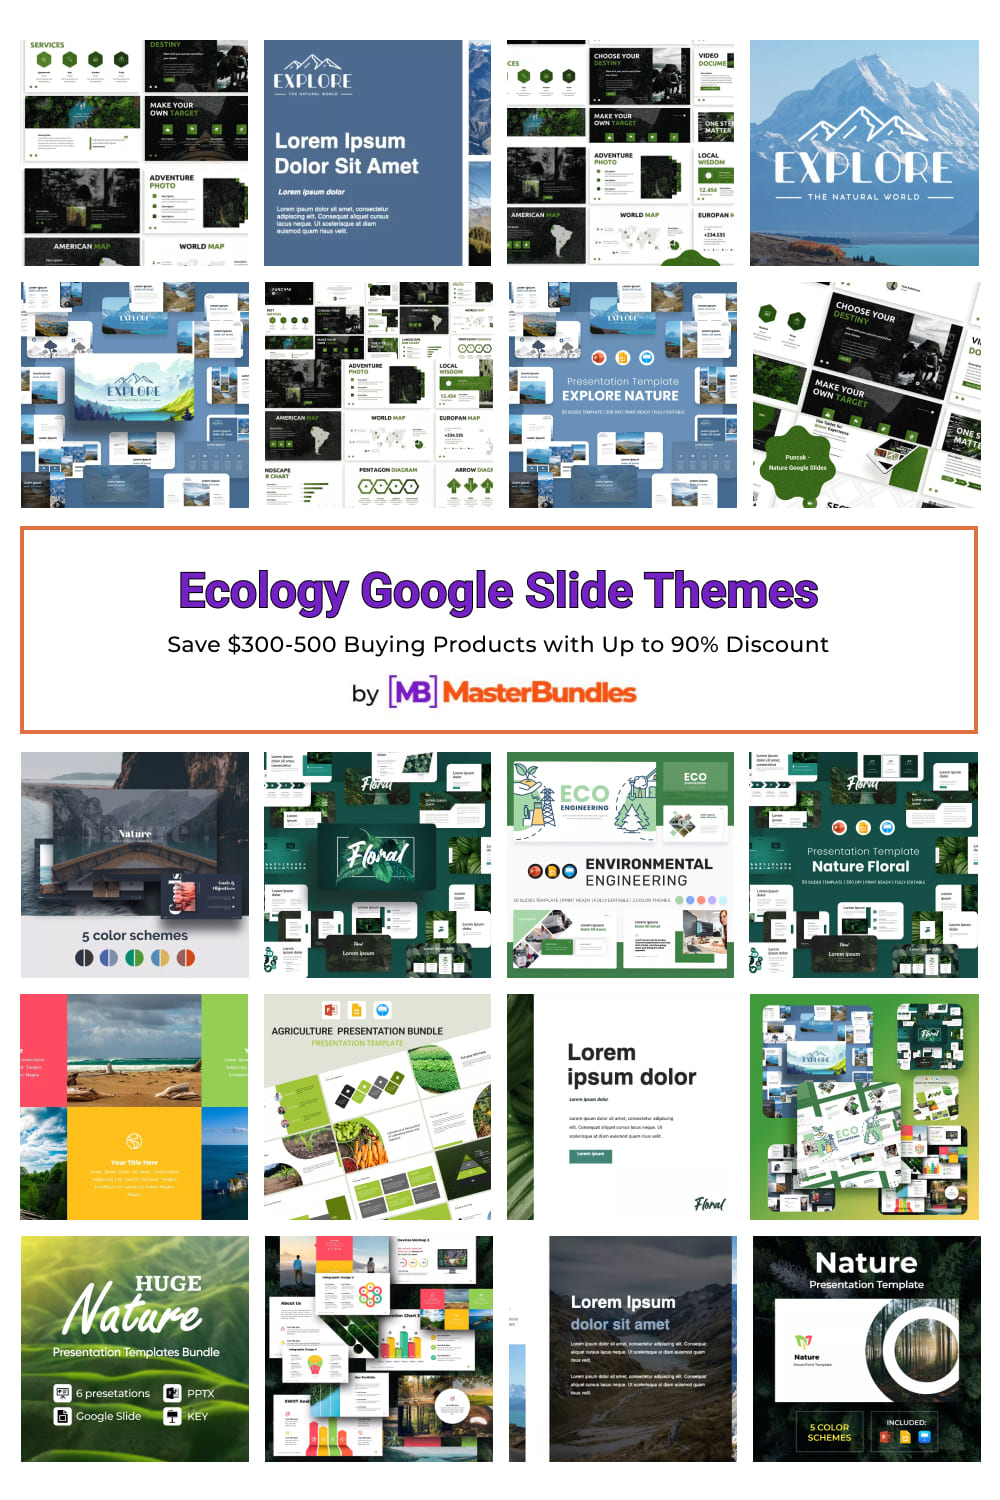 Ecology Google Slide Themes Pinterest image.